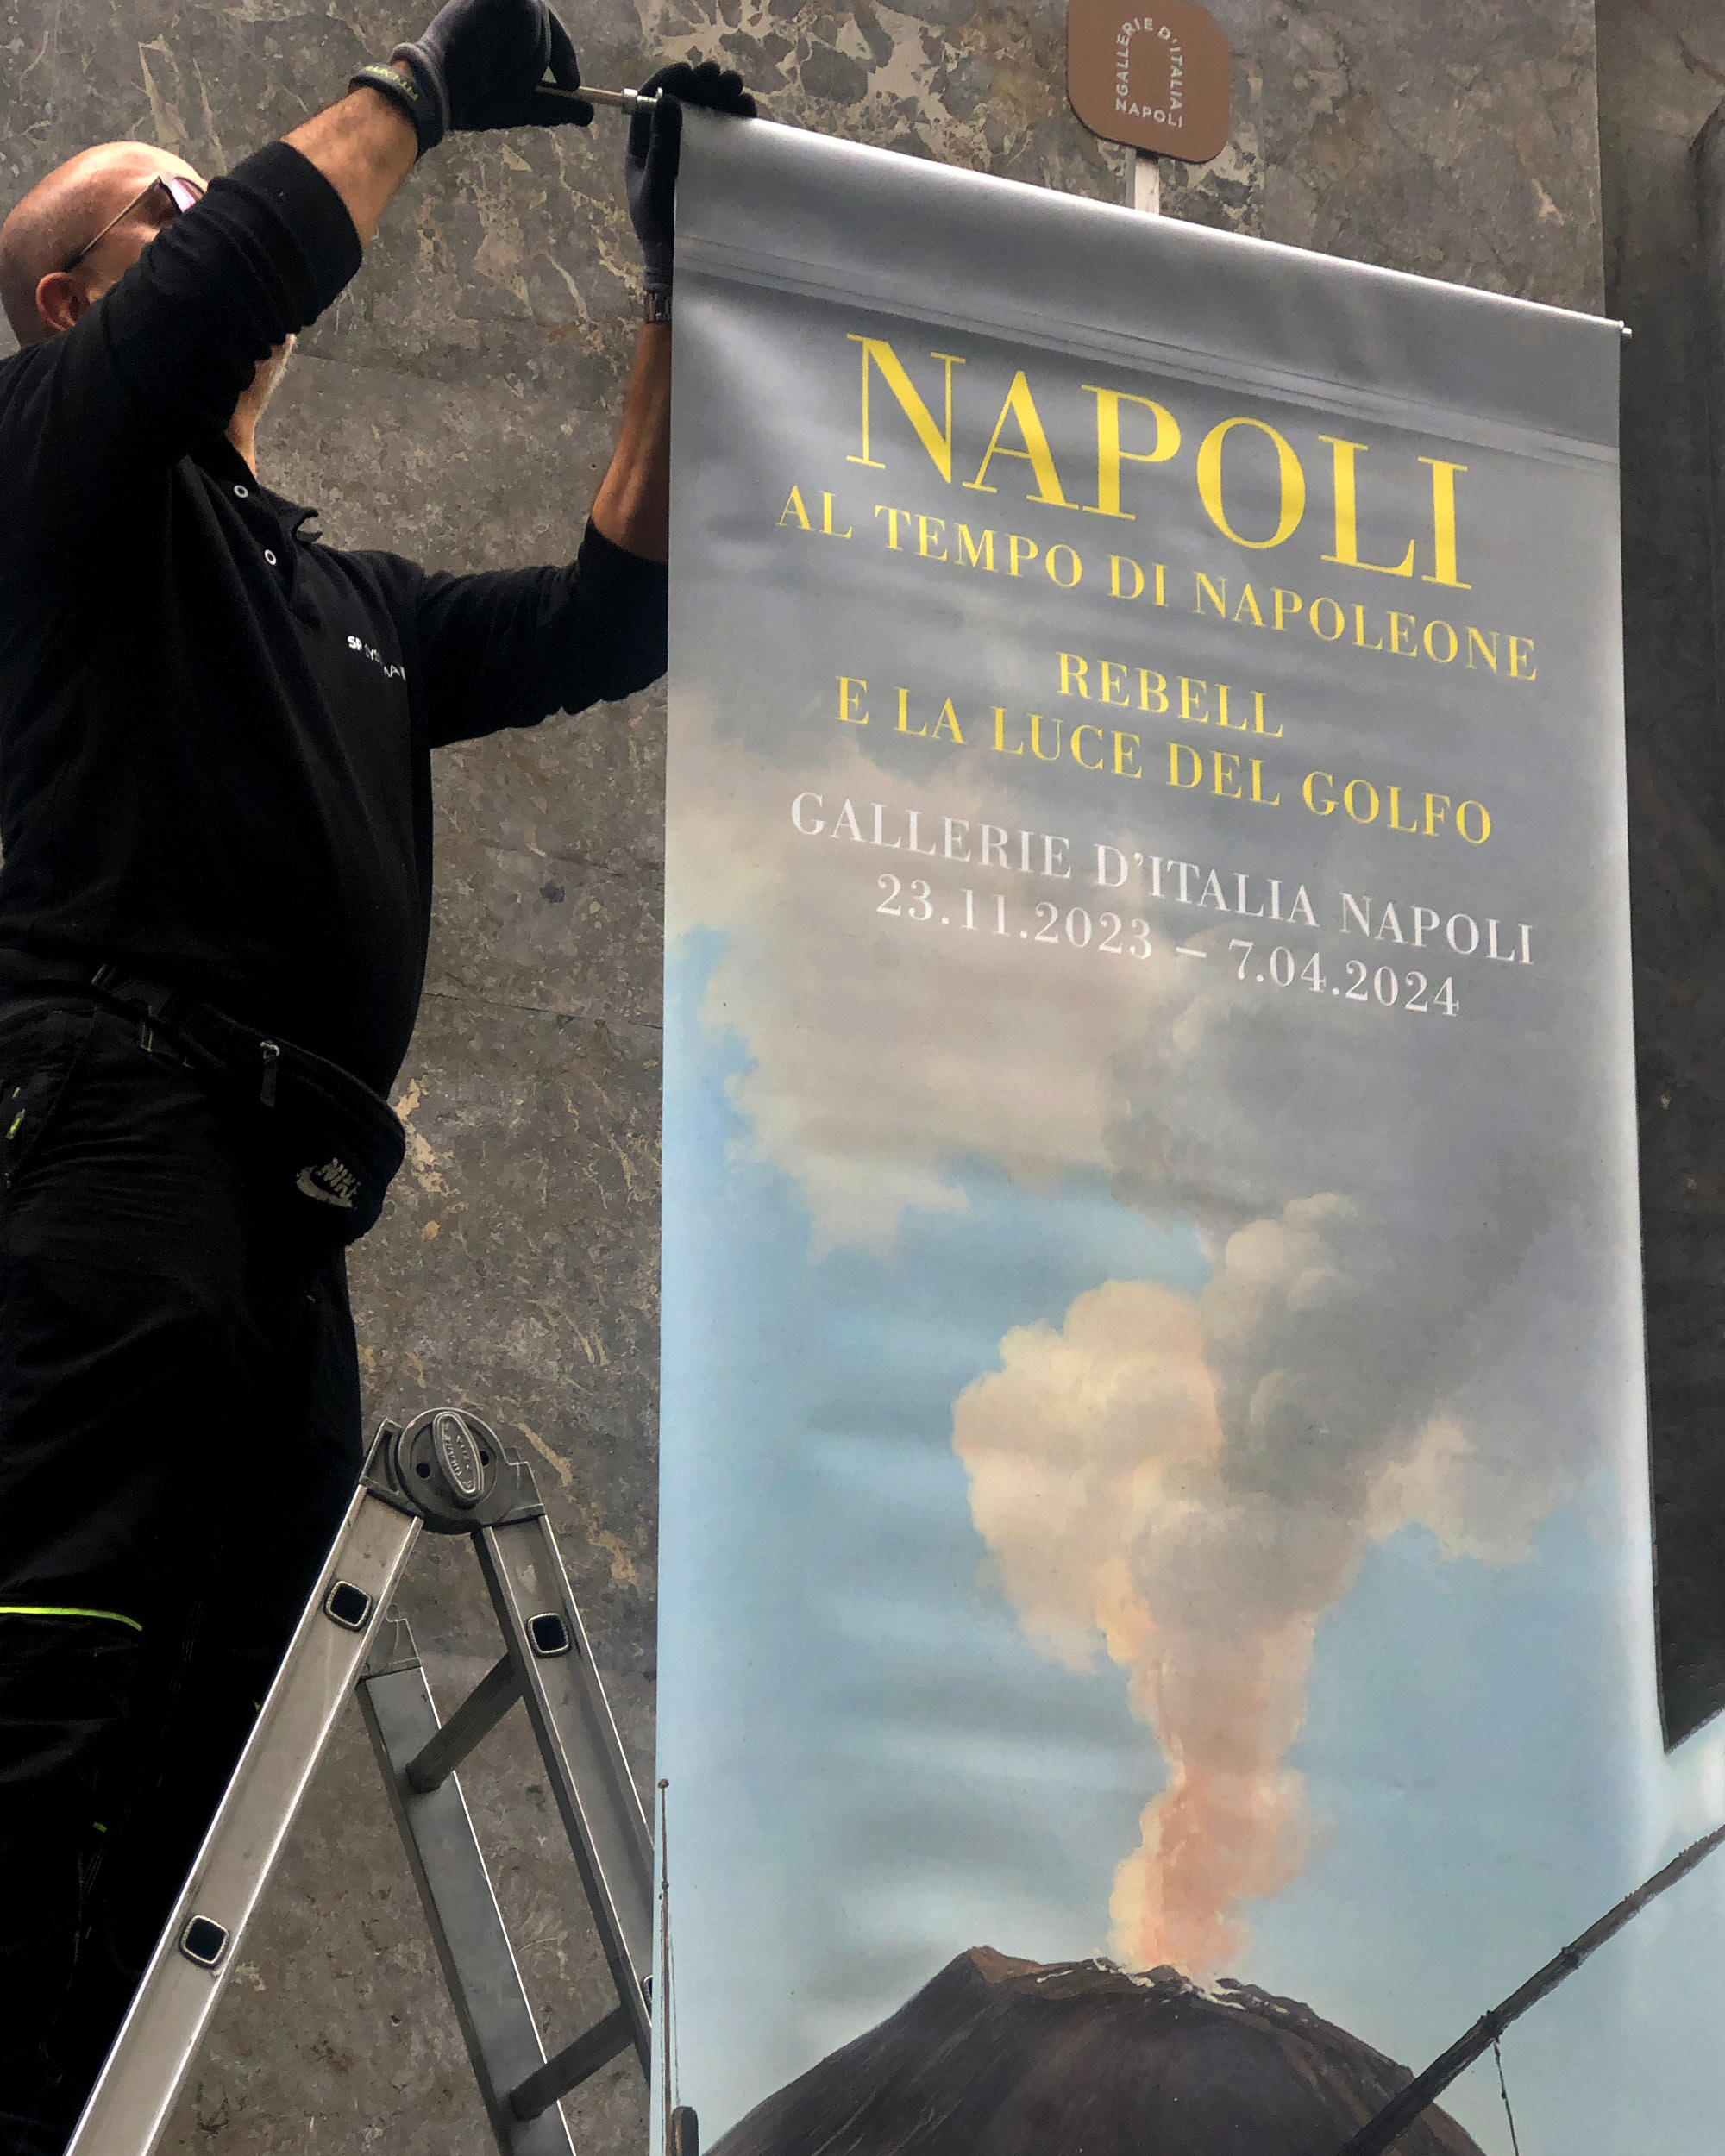 Napoli-al-tempo-di-NapoleoneRebell-e-la-luce-del-golfo-002 